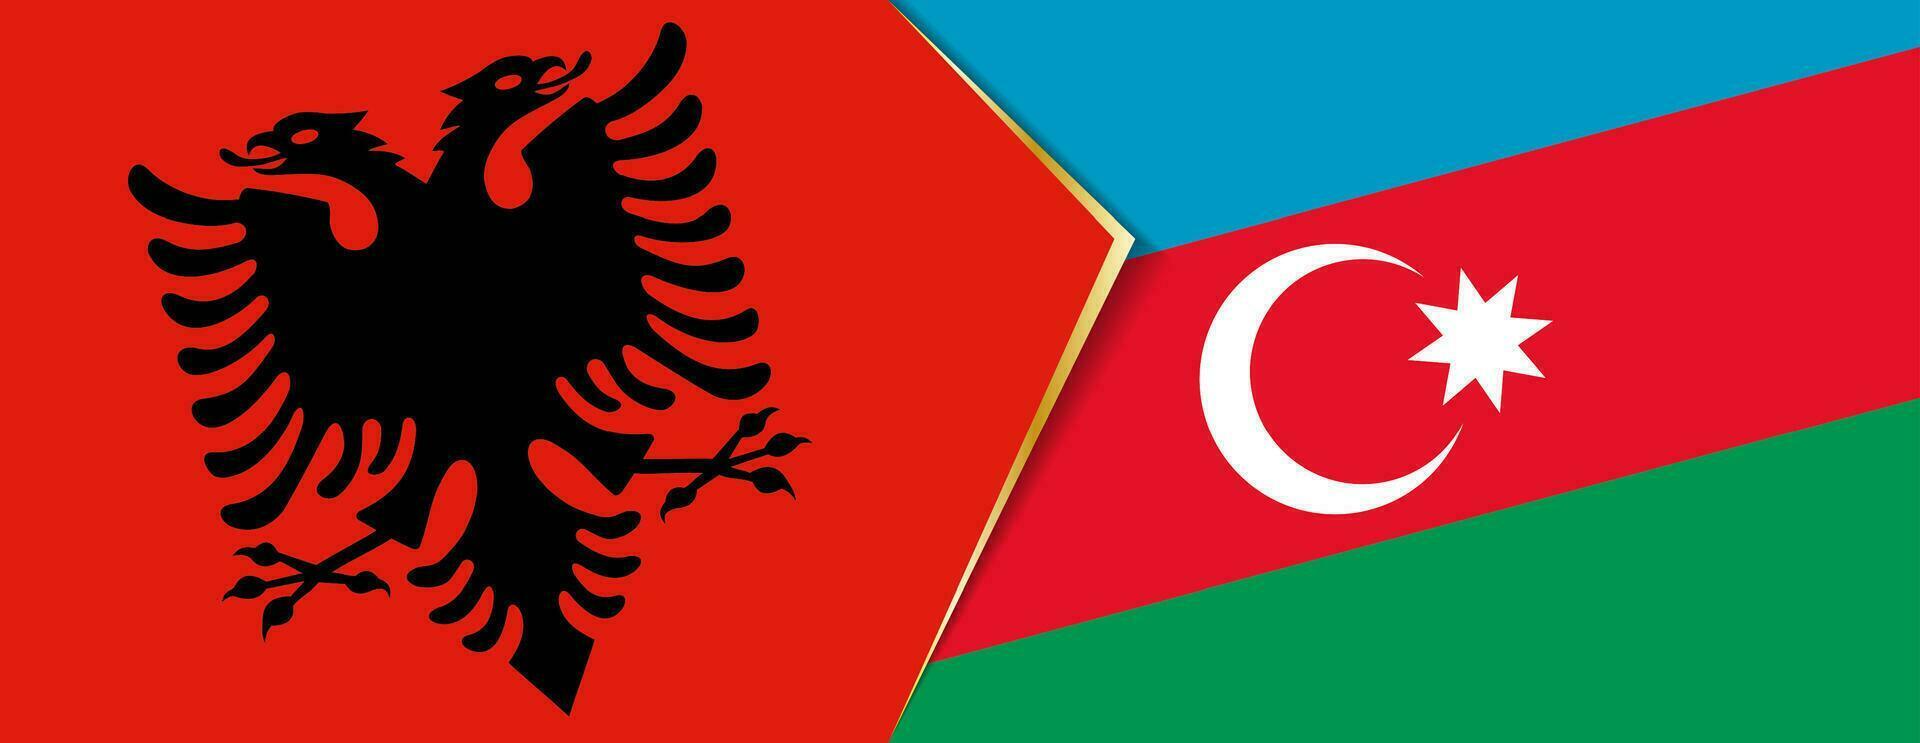 Albânia e Azerbaijão bandeiras, dois vetor bandeiras.